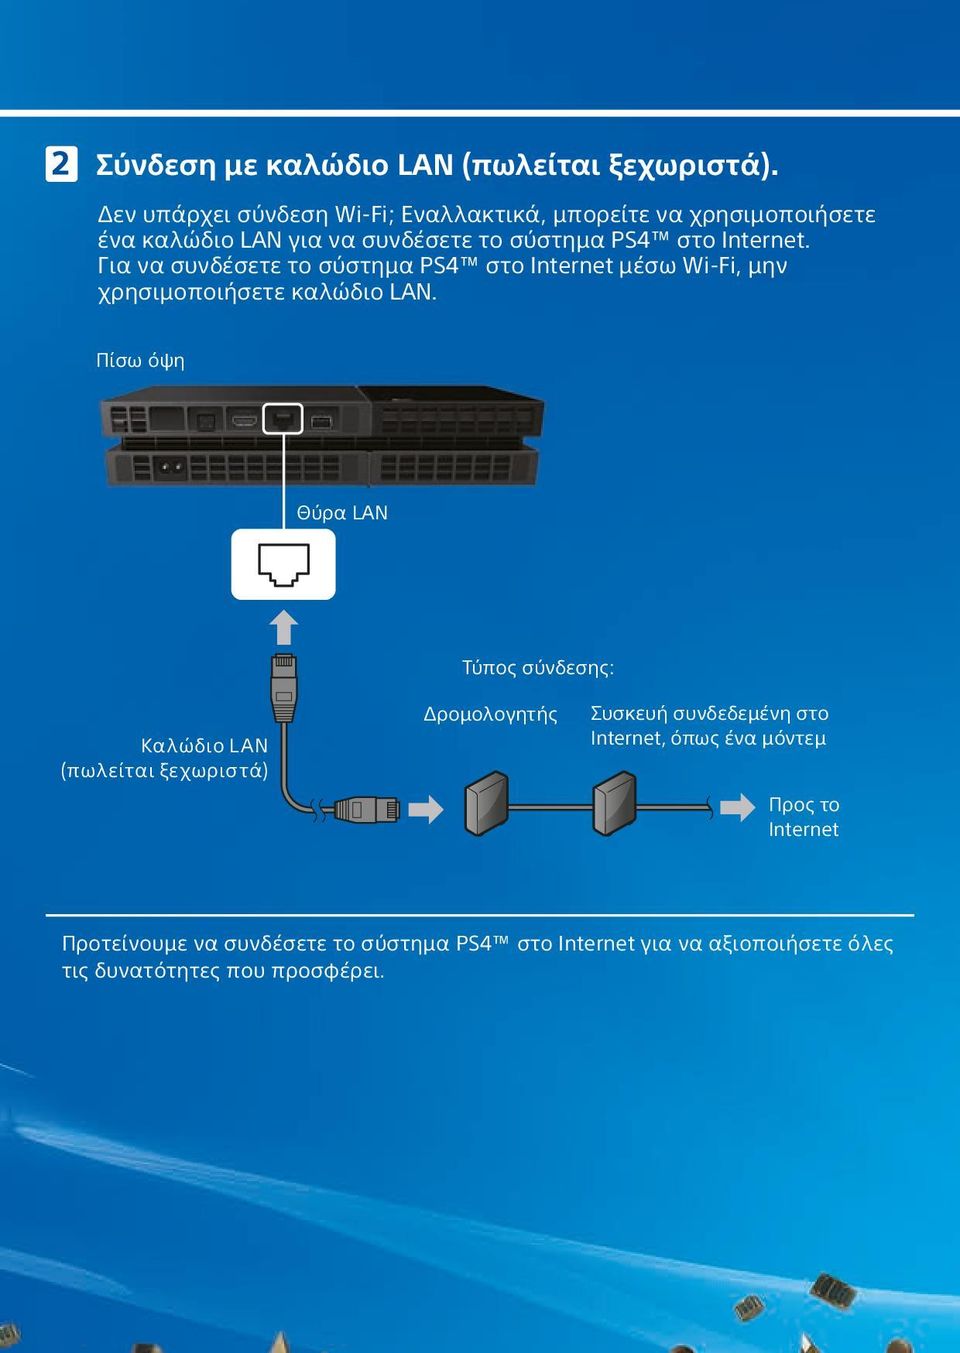 Για να συνδέσετε το σύστημα PS4 στο Internet μέσω Wi-Fi, μην χρησιμοποιήσετε καλώδιο LAN.